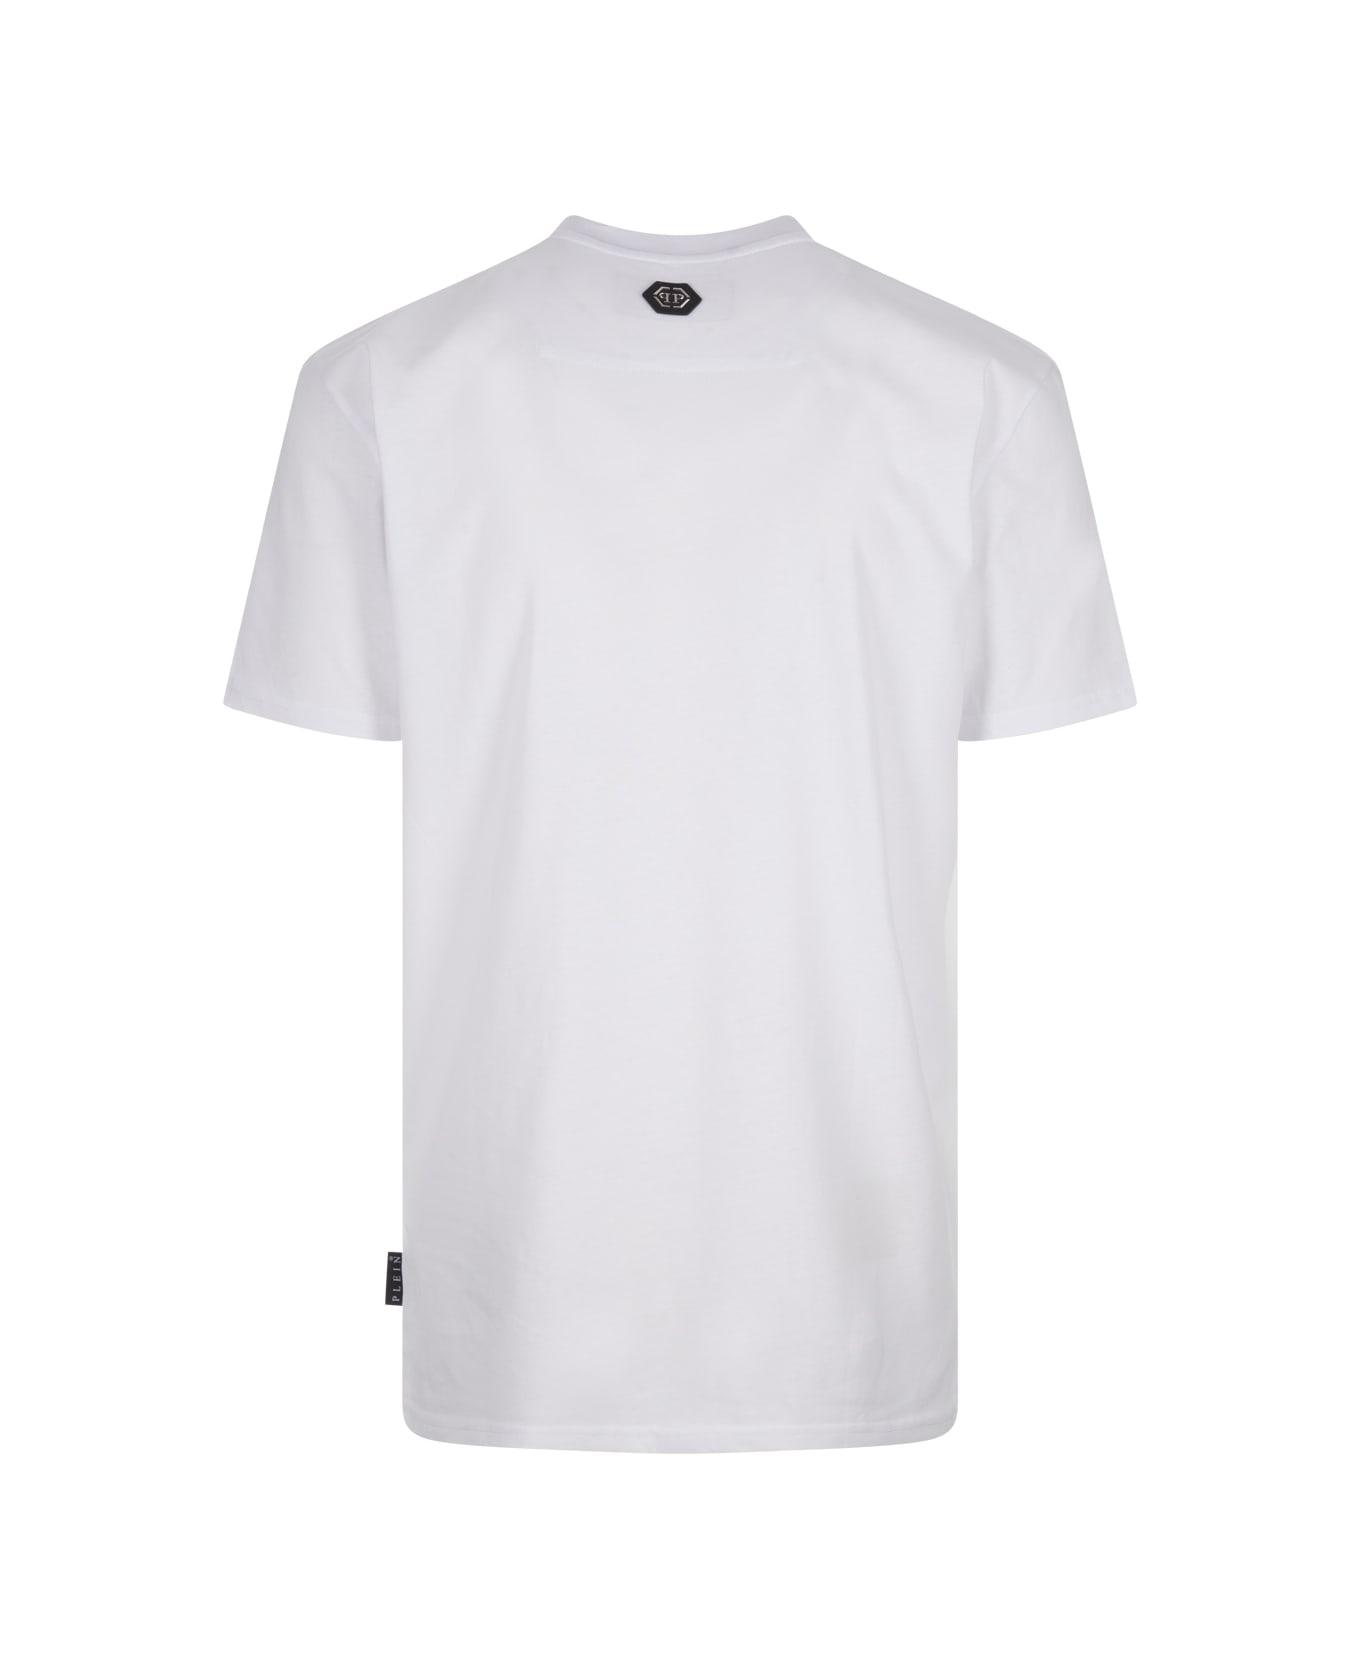 Philipp Plein White T-shirt With Philipp Plein Tm Print - Black